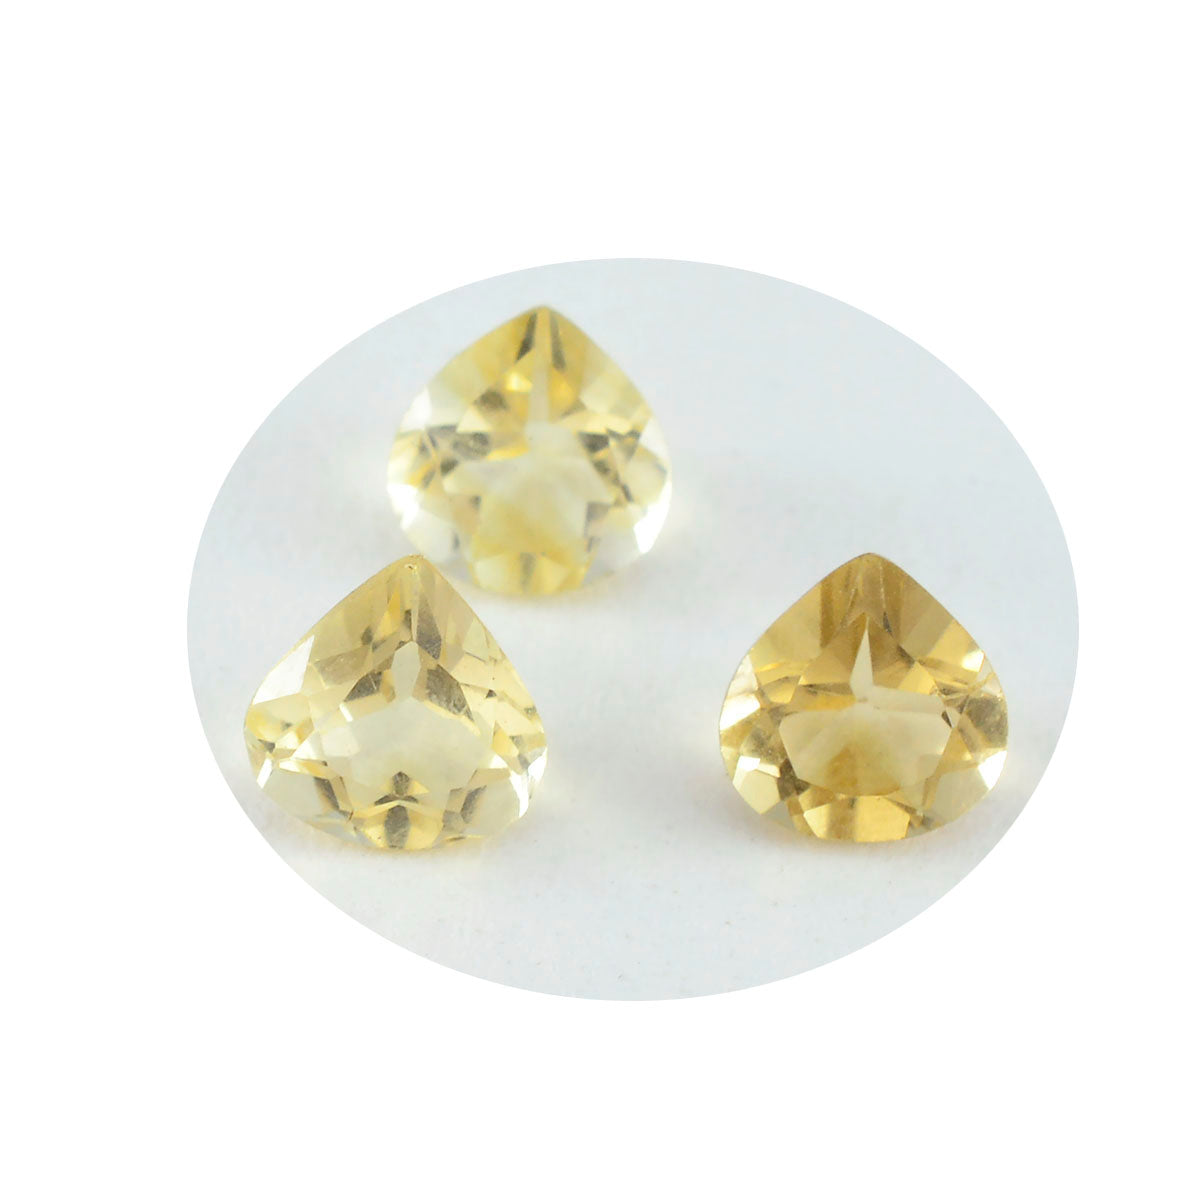 riyogems 1шт натуральный желтый цитрин ограненный 7x7 мм драгоценный камень в форме сердца превосходного качества